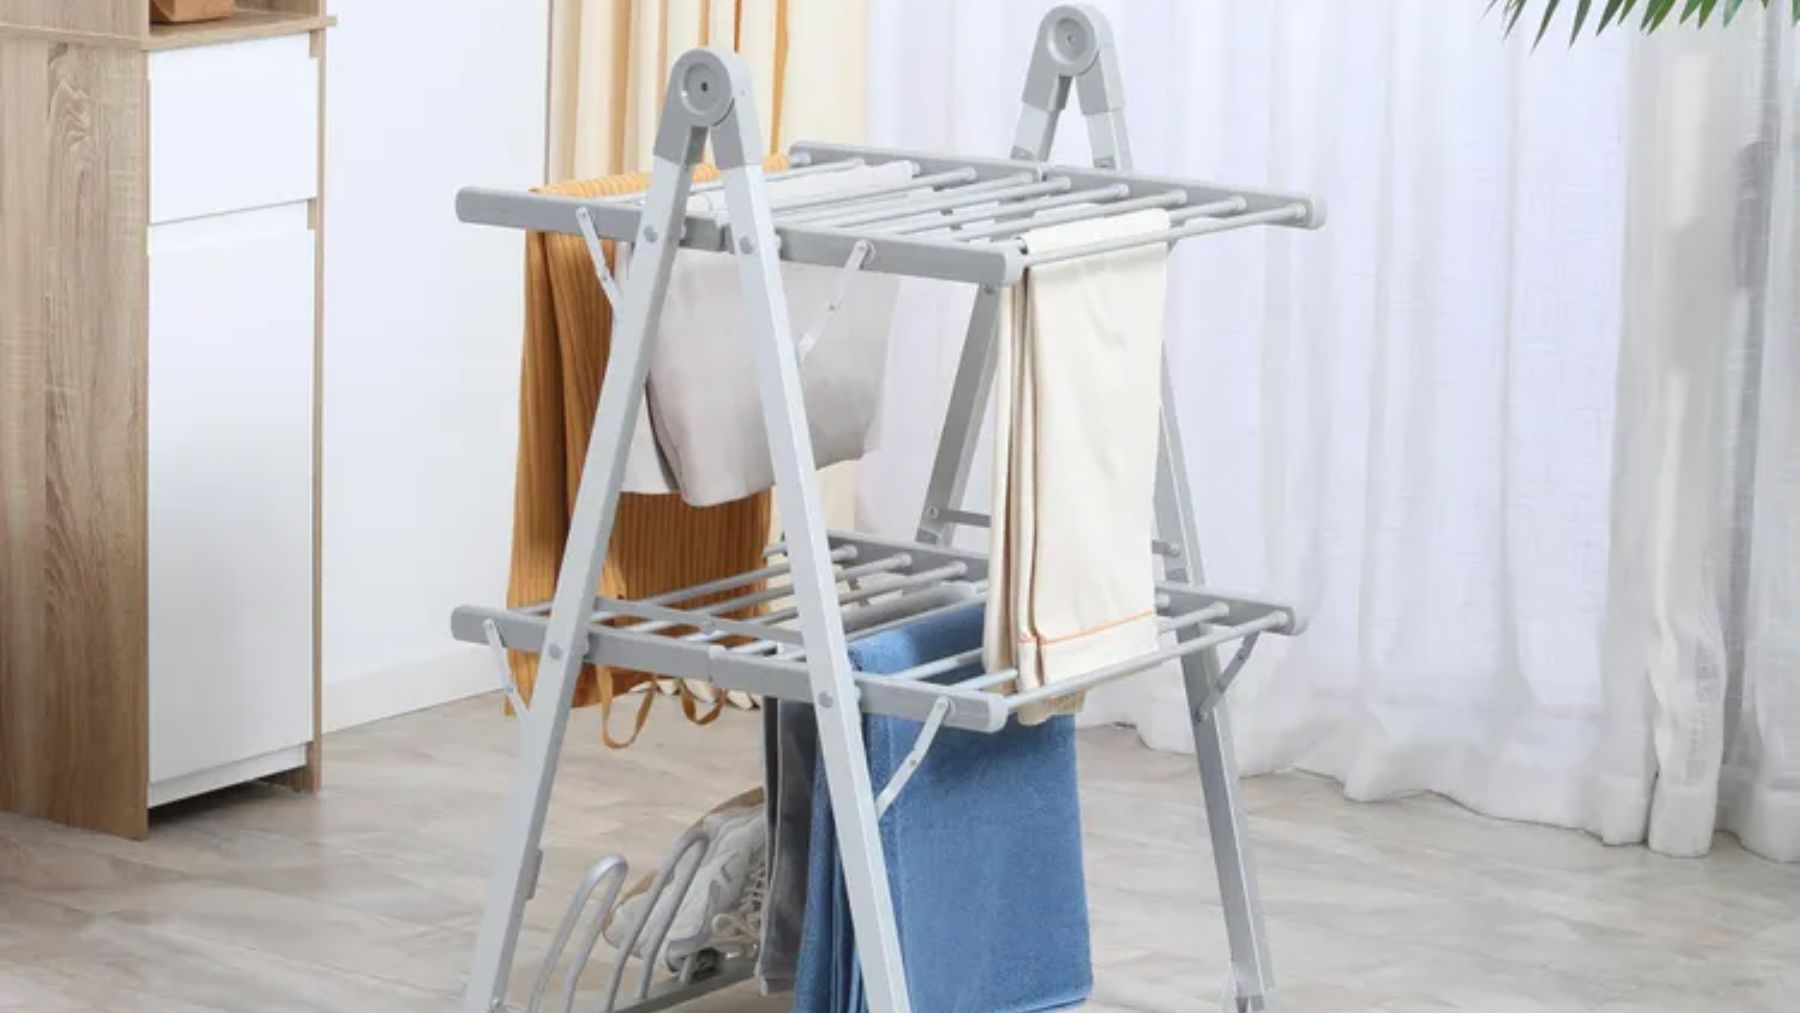 Los mejores tendederos plegables para secar tu ropa, sin importar